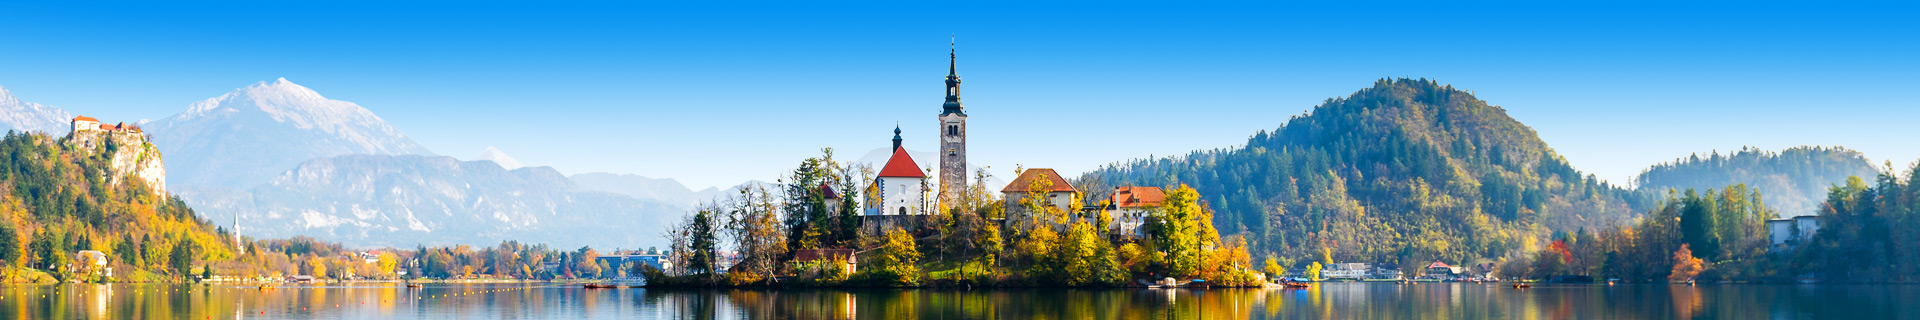 Uitzicht op een meer met een eilandje met een kerkje in Slovenië